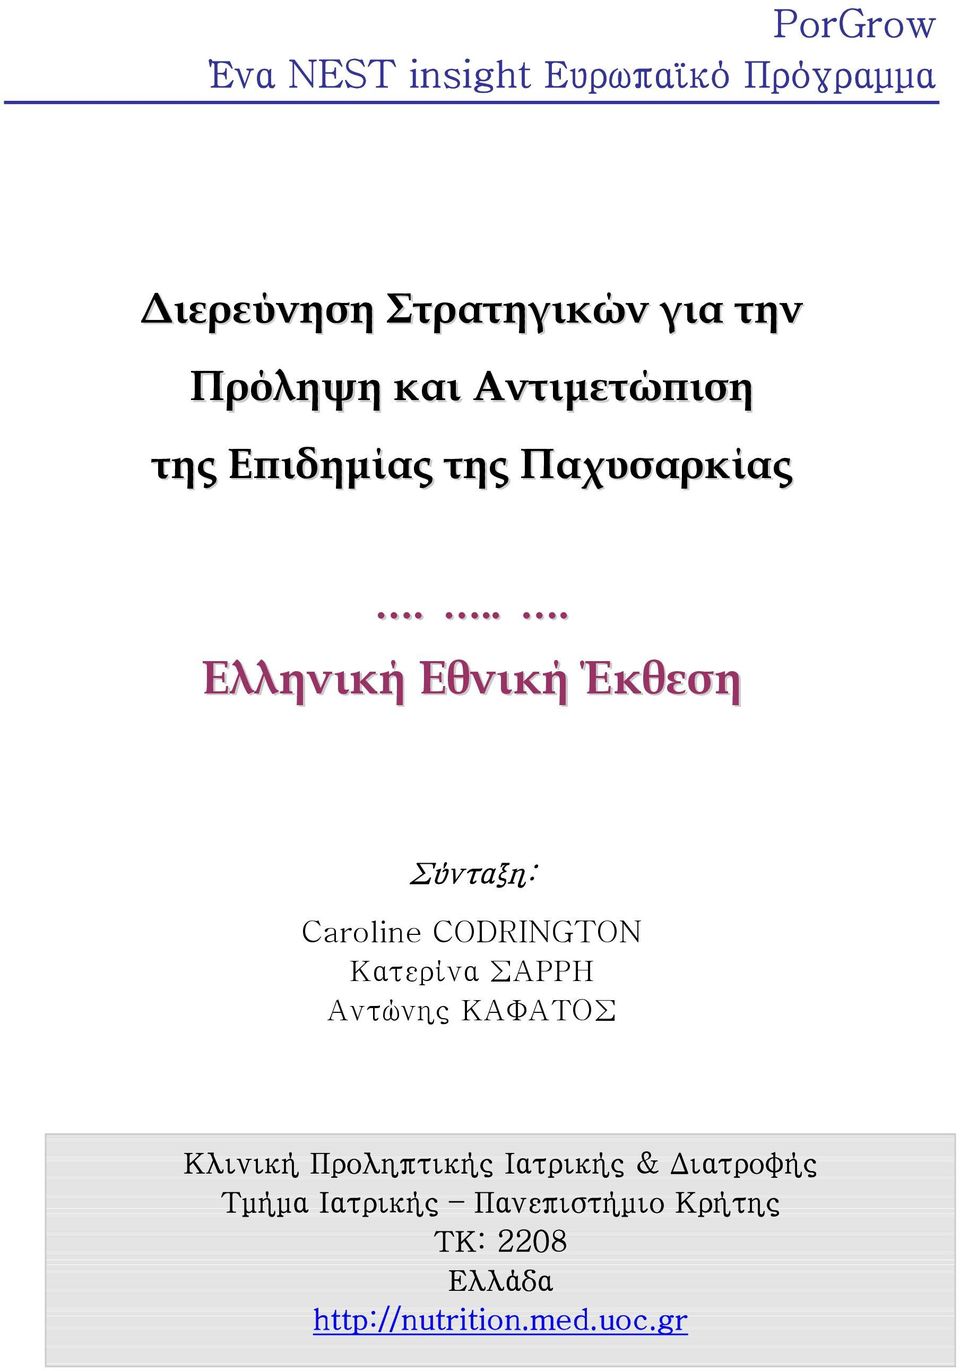 ... Ελληνική Εθνική Έκθεση Σύνταξη: Caroline CODRINGTON Κατερίνα ΣΑΡΡΗ Αντώνης